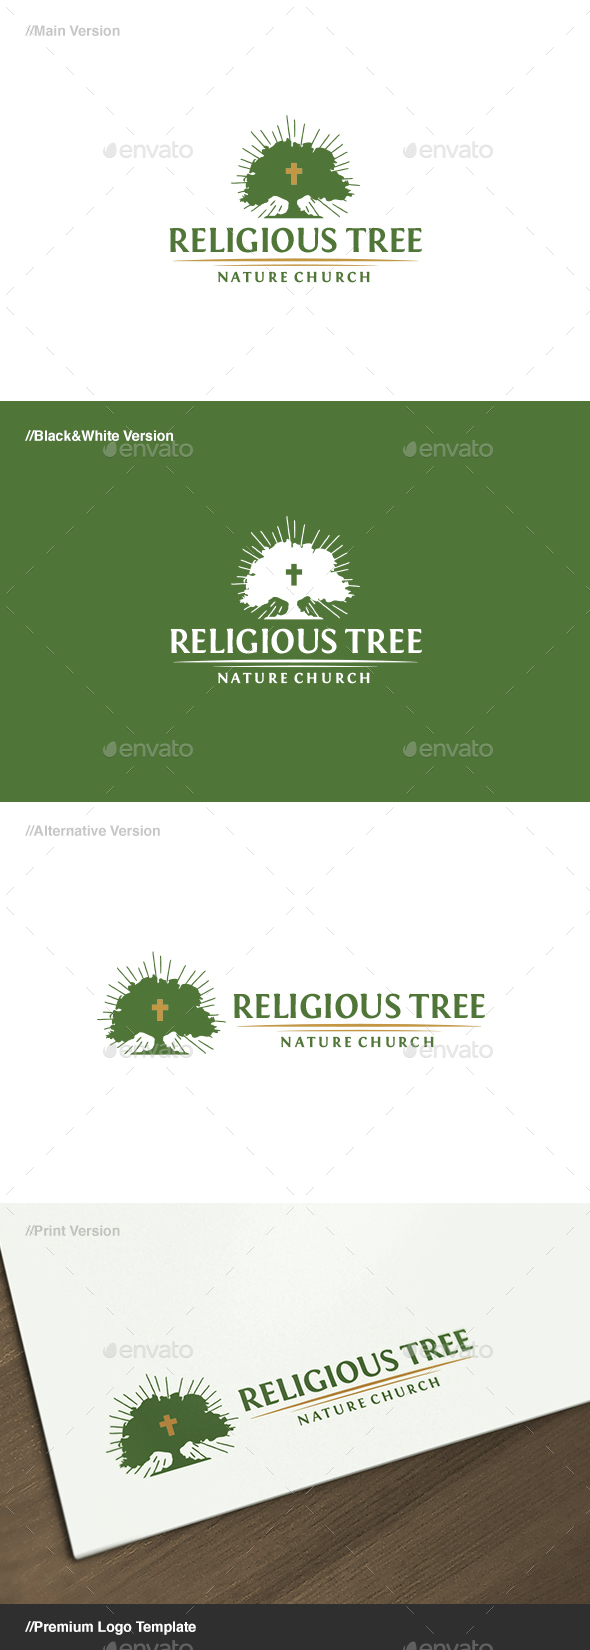 Religious Tree Logo